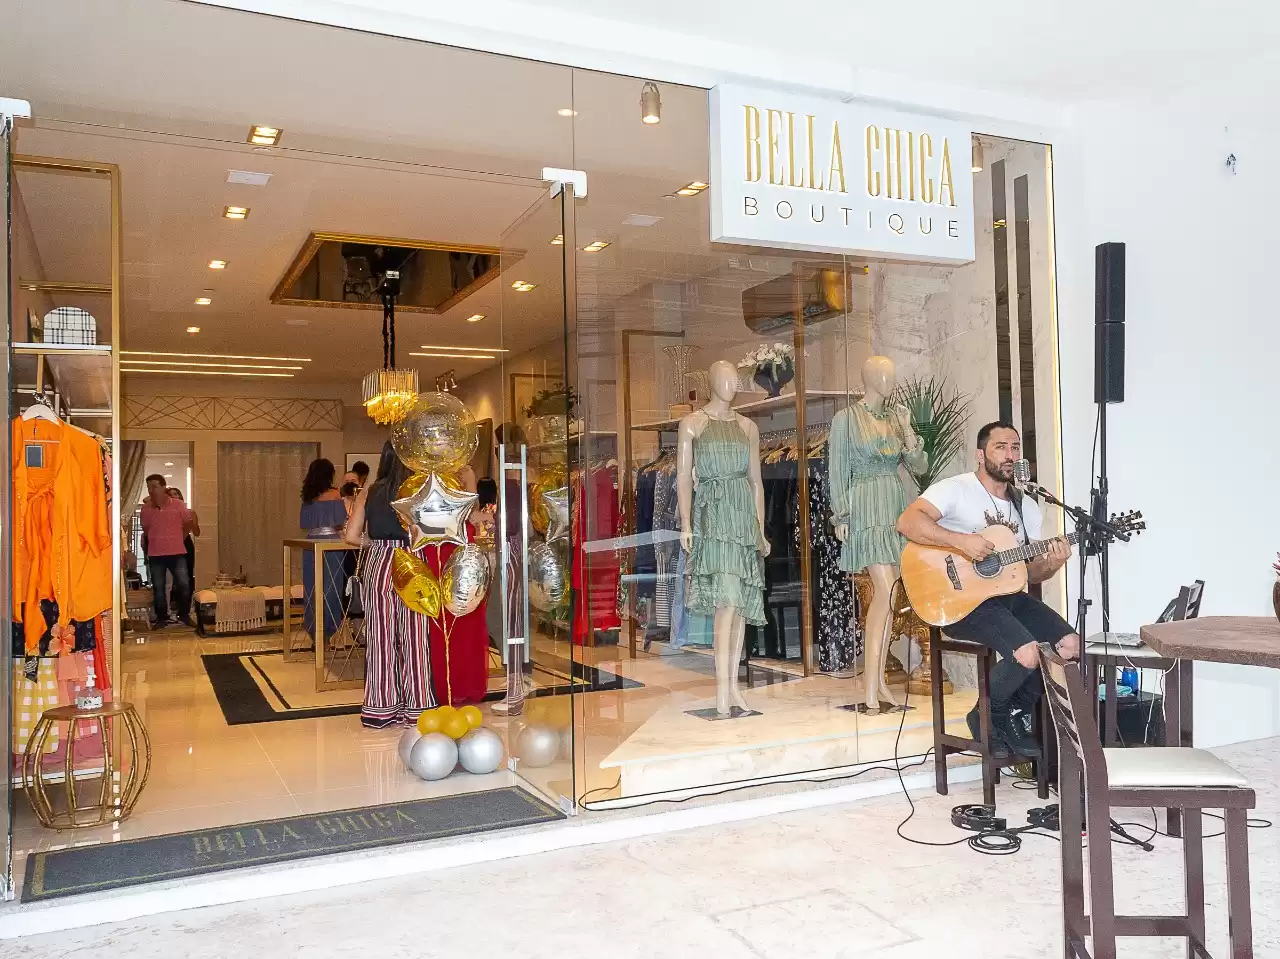  Bella Chica Boutique inaugura com petit comité em Balneário Camboriú